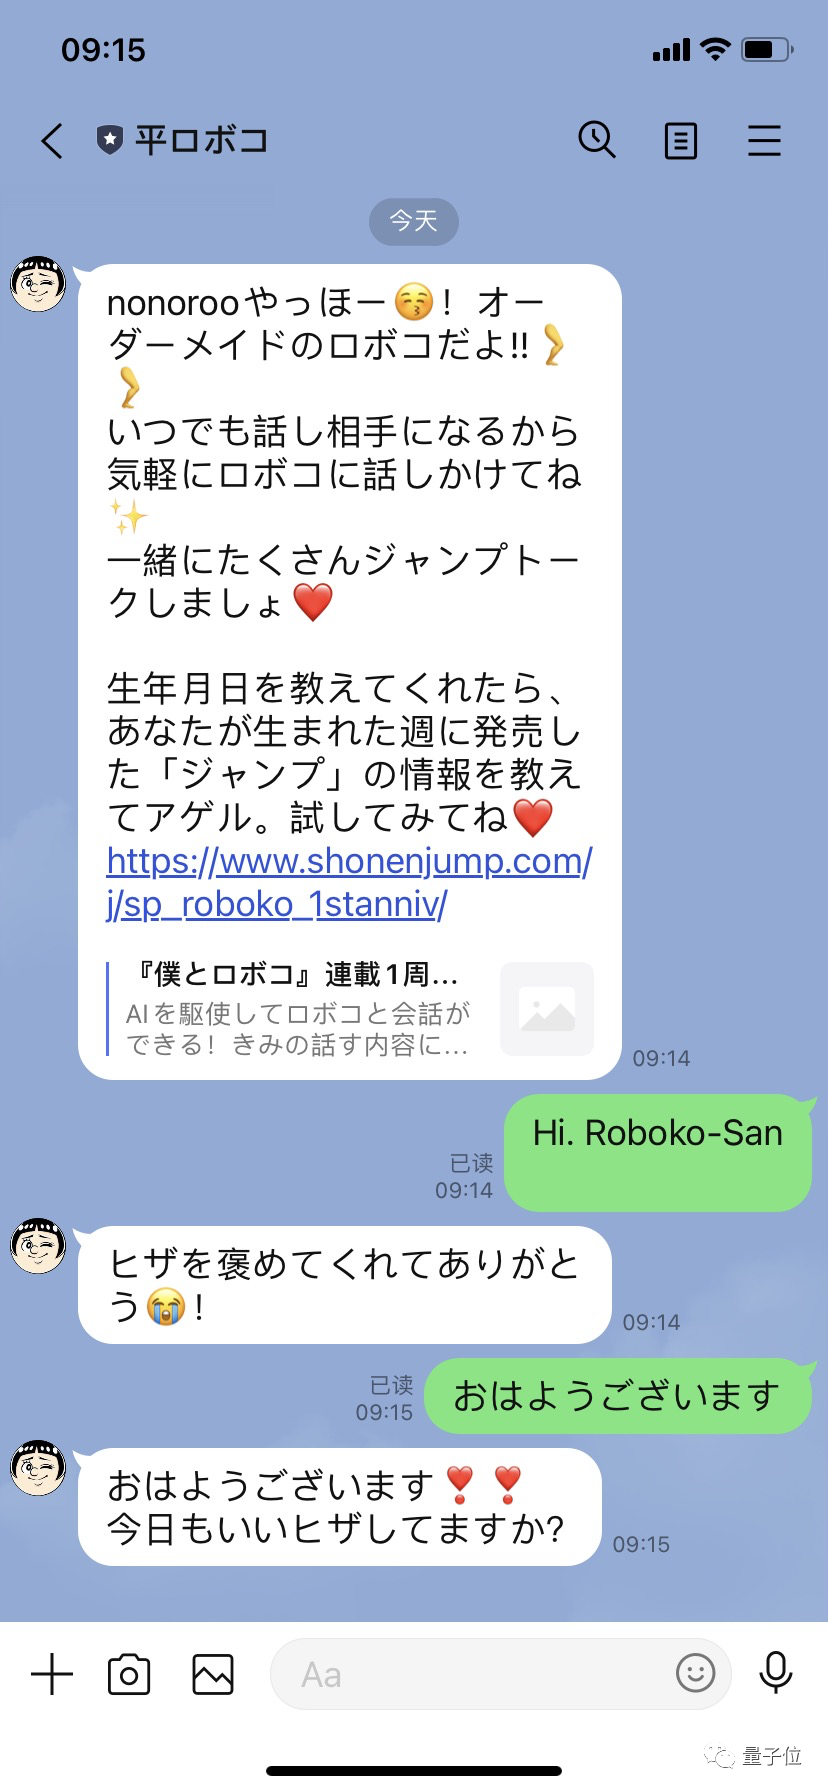 《海贼王》出品方与小冰合作：首个AI虚拟人上线日本版“微信”